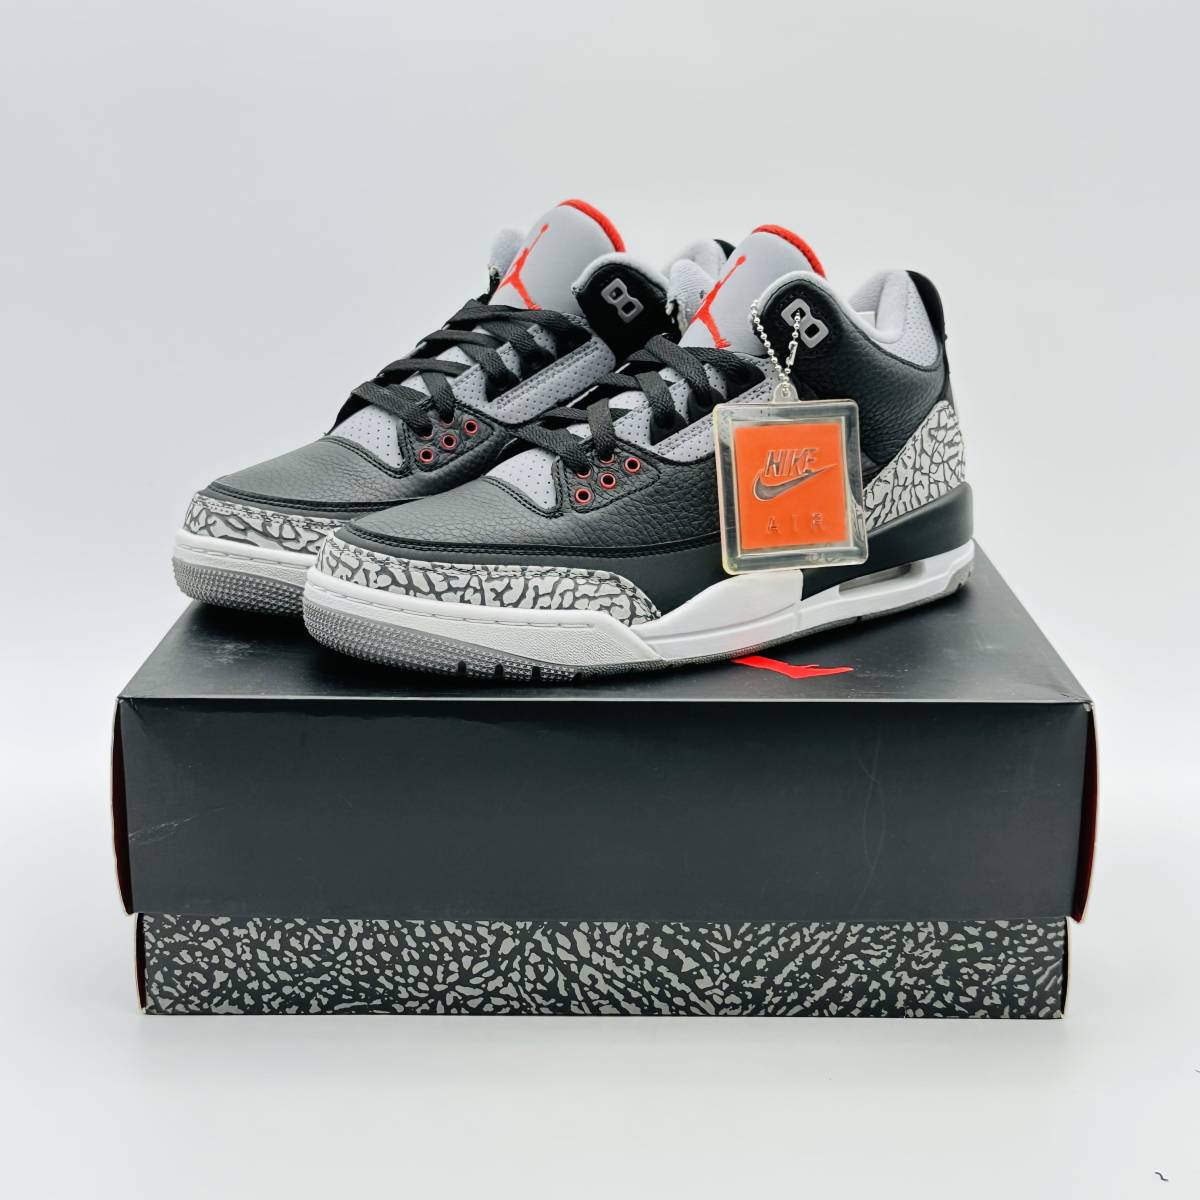 【新品未使用】Nike Air Jordan 3 Retro OG Black Cement ナイキ エアジョーダン3 レトロ OG ブラック セメント 854262-001